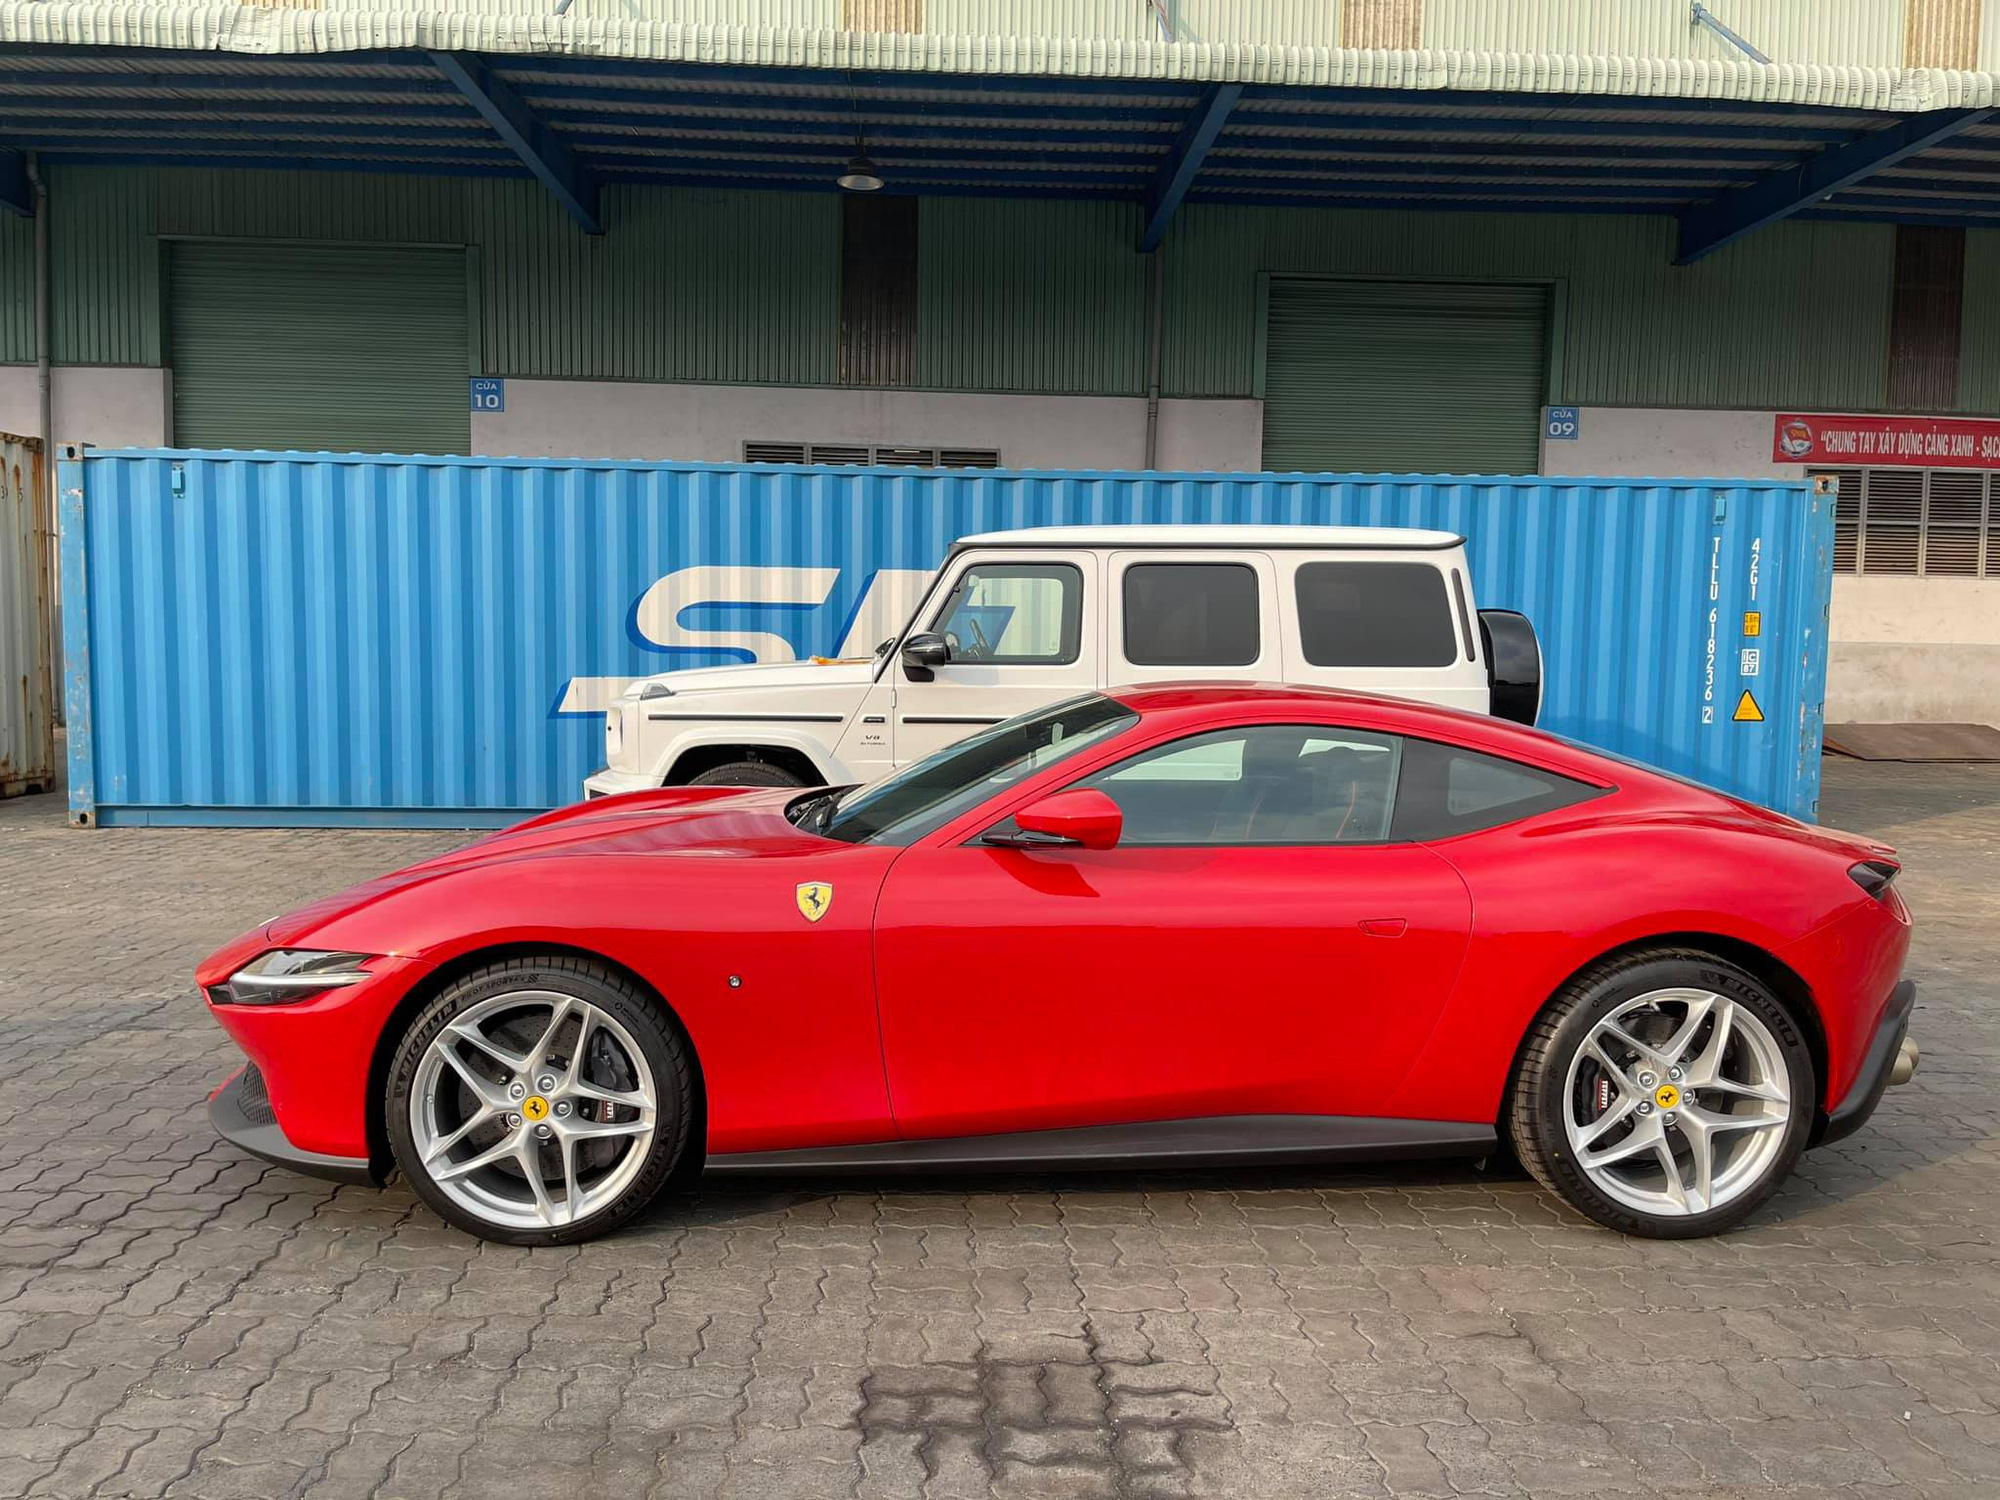 Khui công Ferrari Roma thứ 2 tại Việt Nam: Không chỉ khác ở màu sơn, nội thất cũng mới lạ so với chiếc đầu - Ảnh 3.